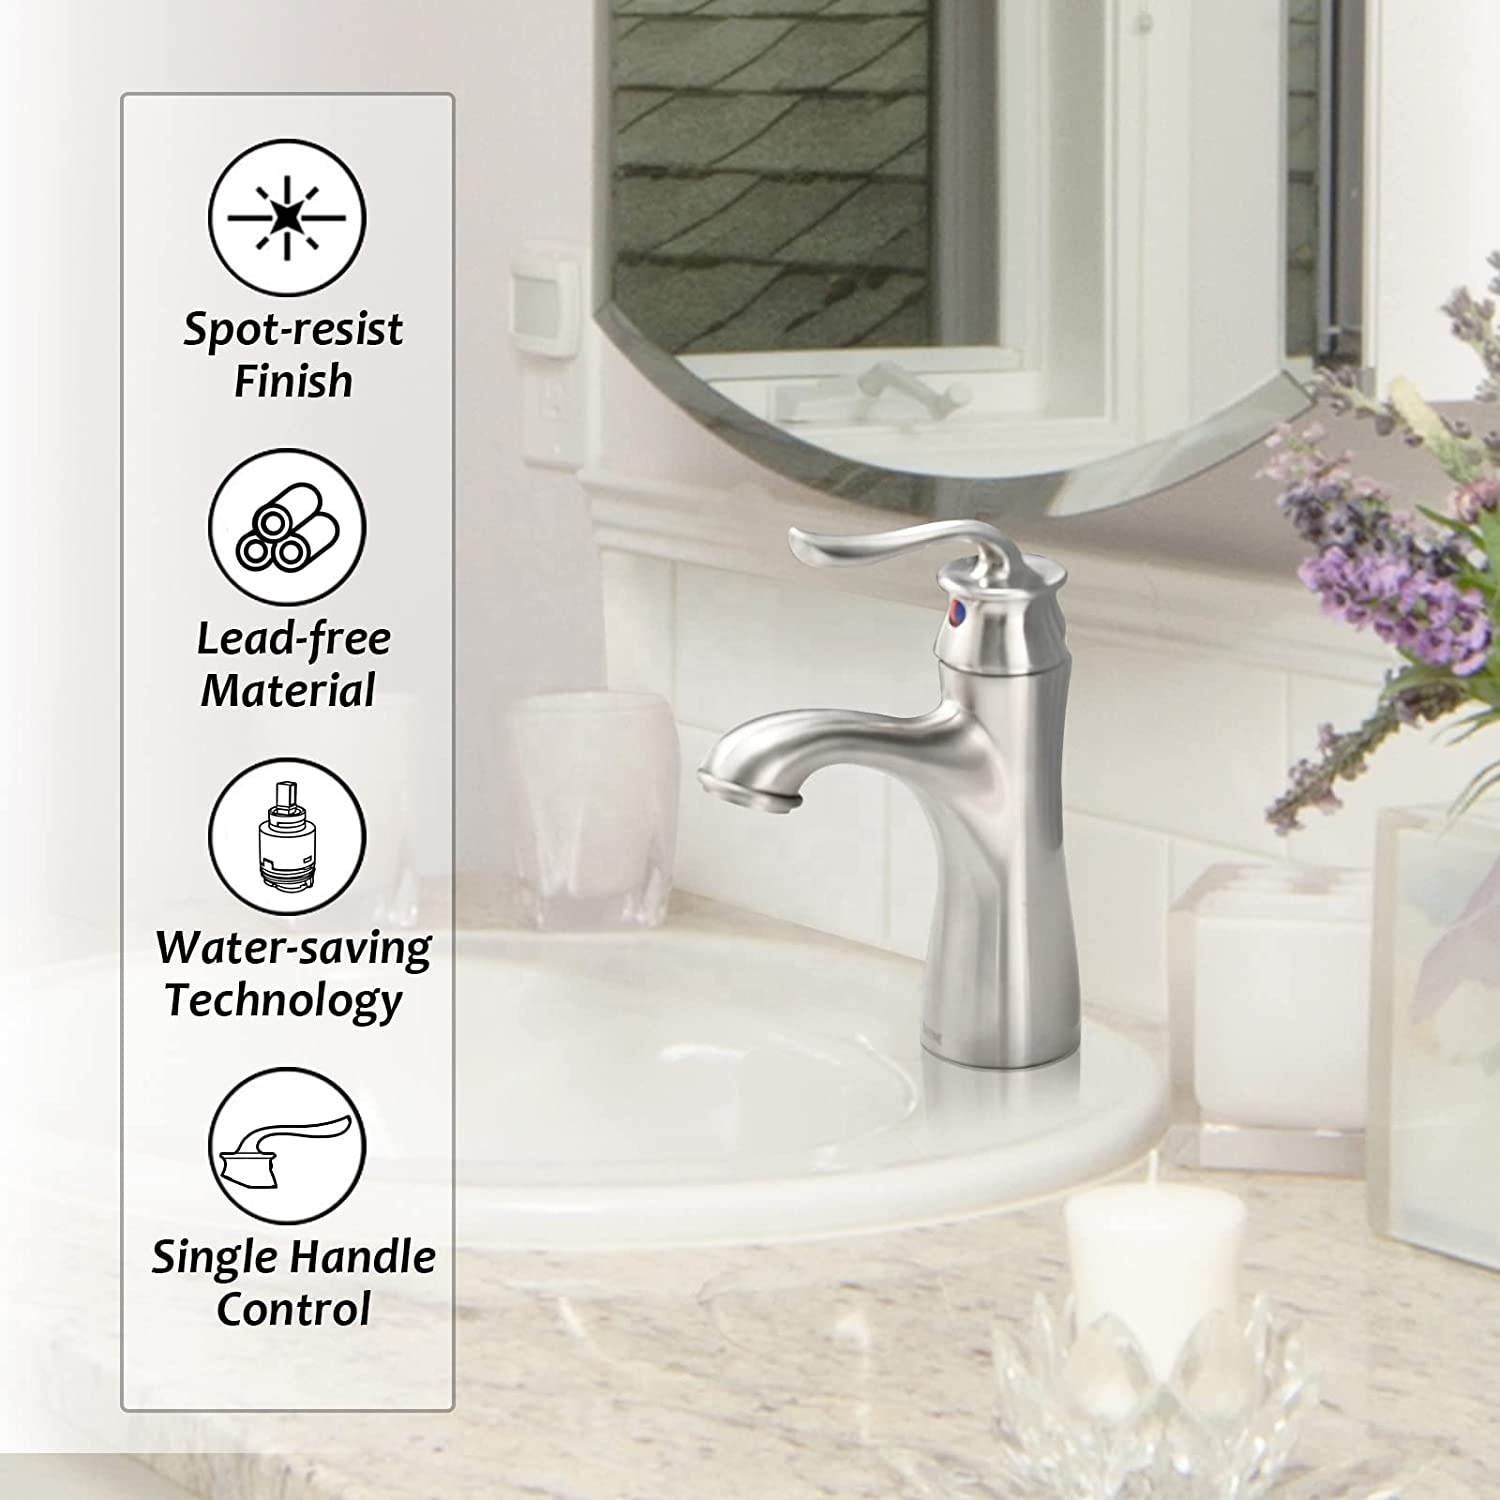 APS165-BN Смеситель для ванной Никелевый смеситель для мытья рук Смесители для ванной Смесители для ванной